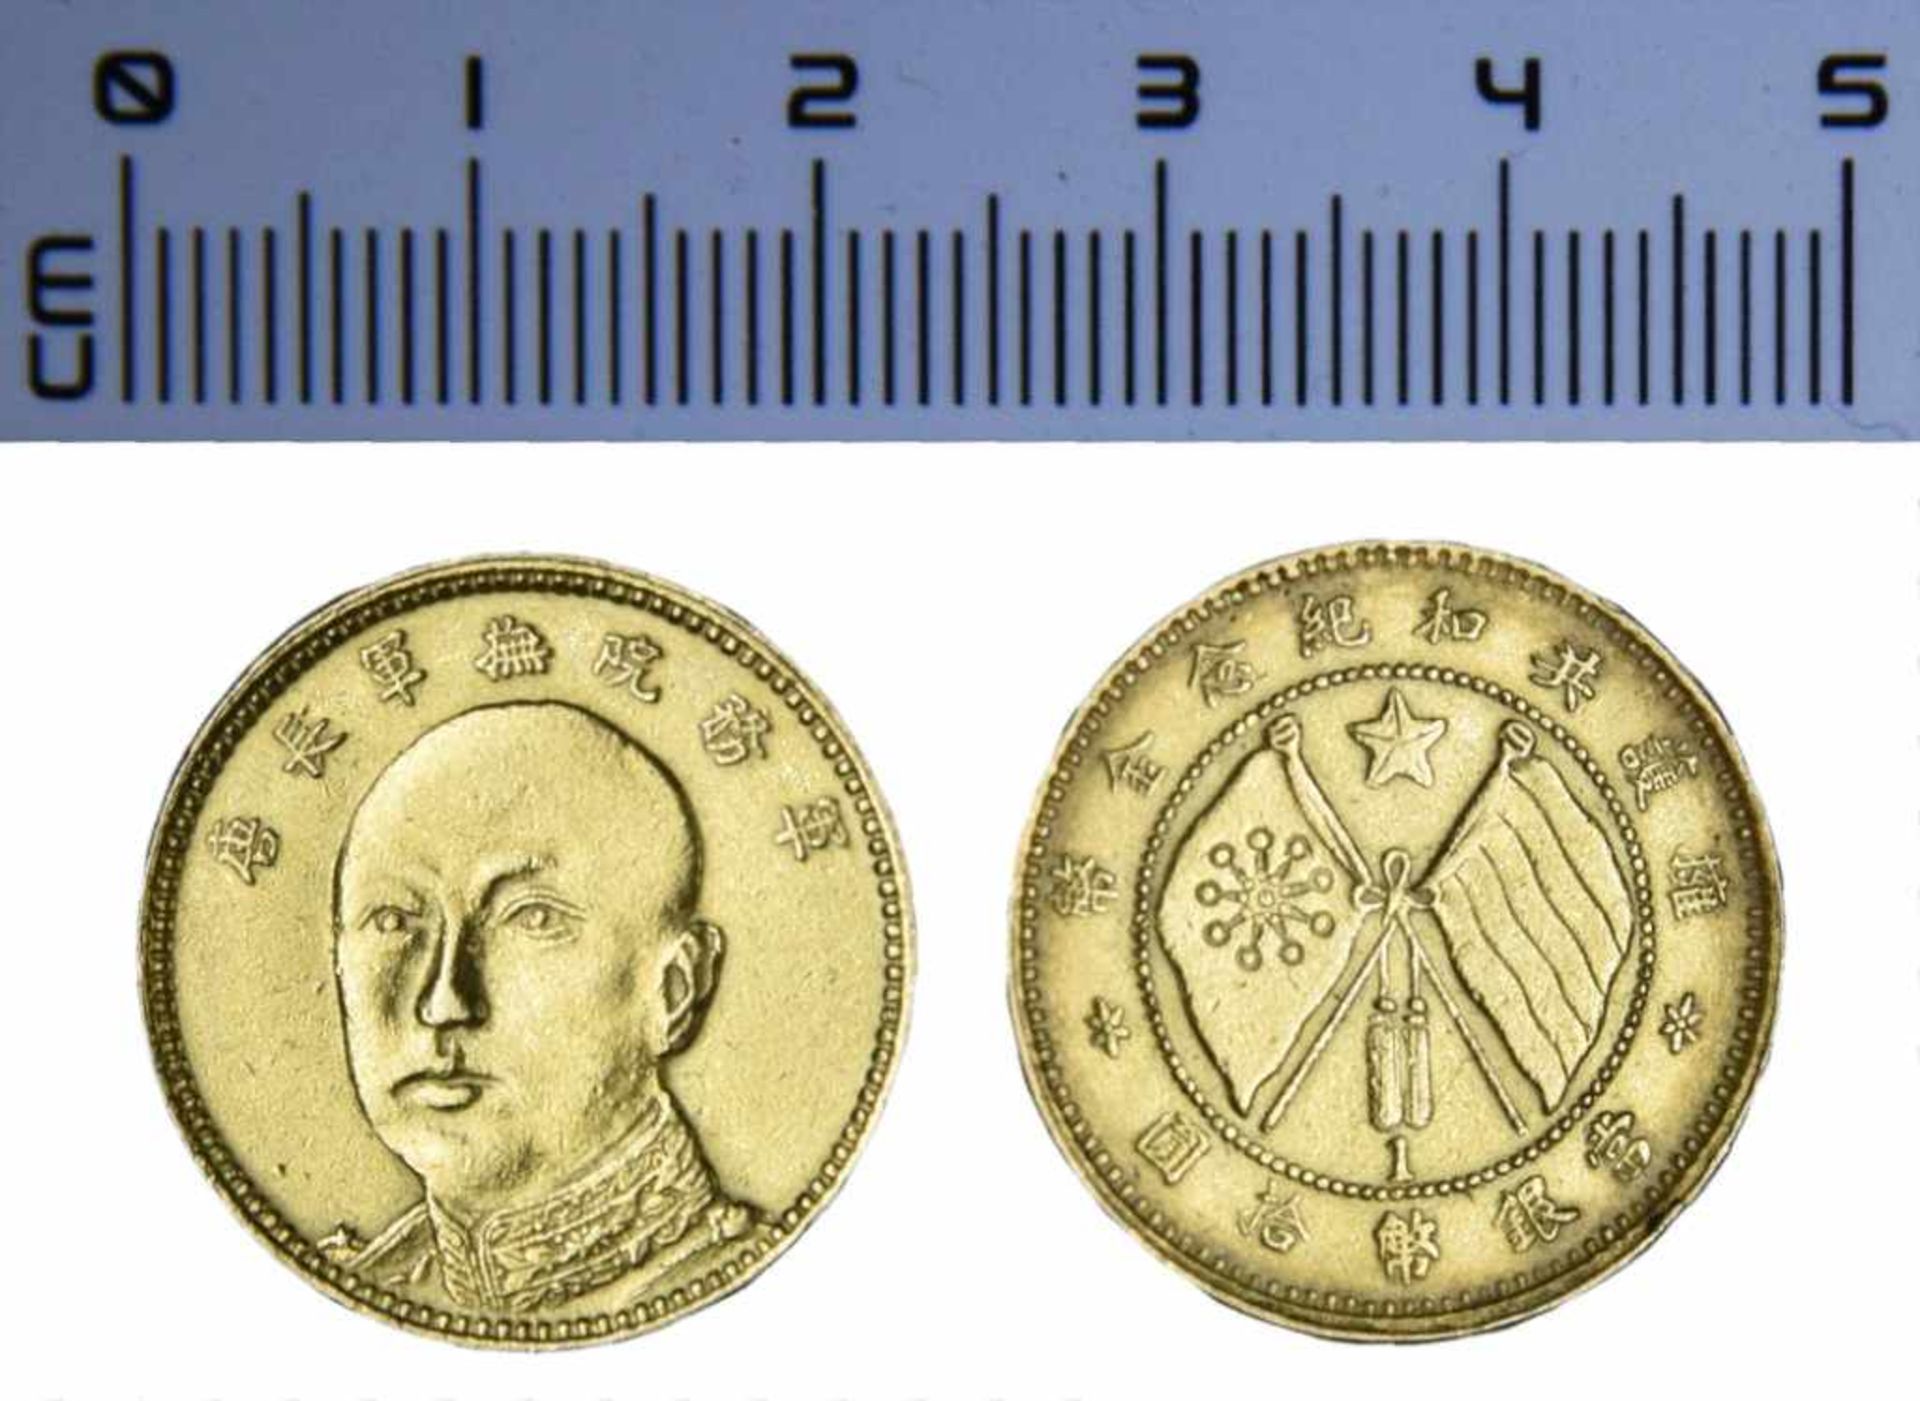 CHINA, YUNNAN, 10 Yuans CHINA, YUNNAN, 10 Yuans, 9.01g, n.d. (1919), facing bust of General T'ang